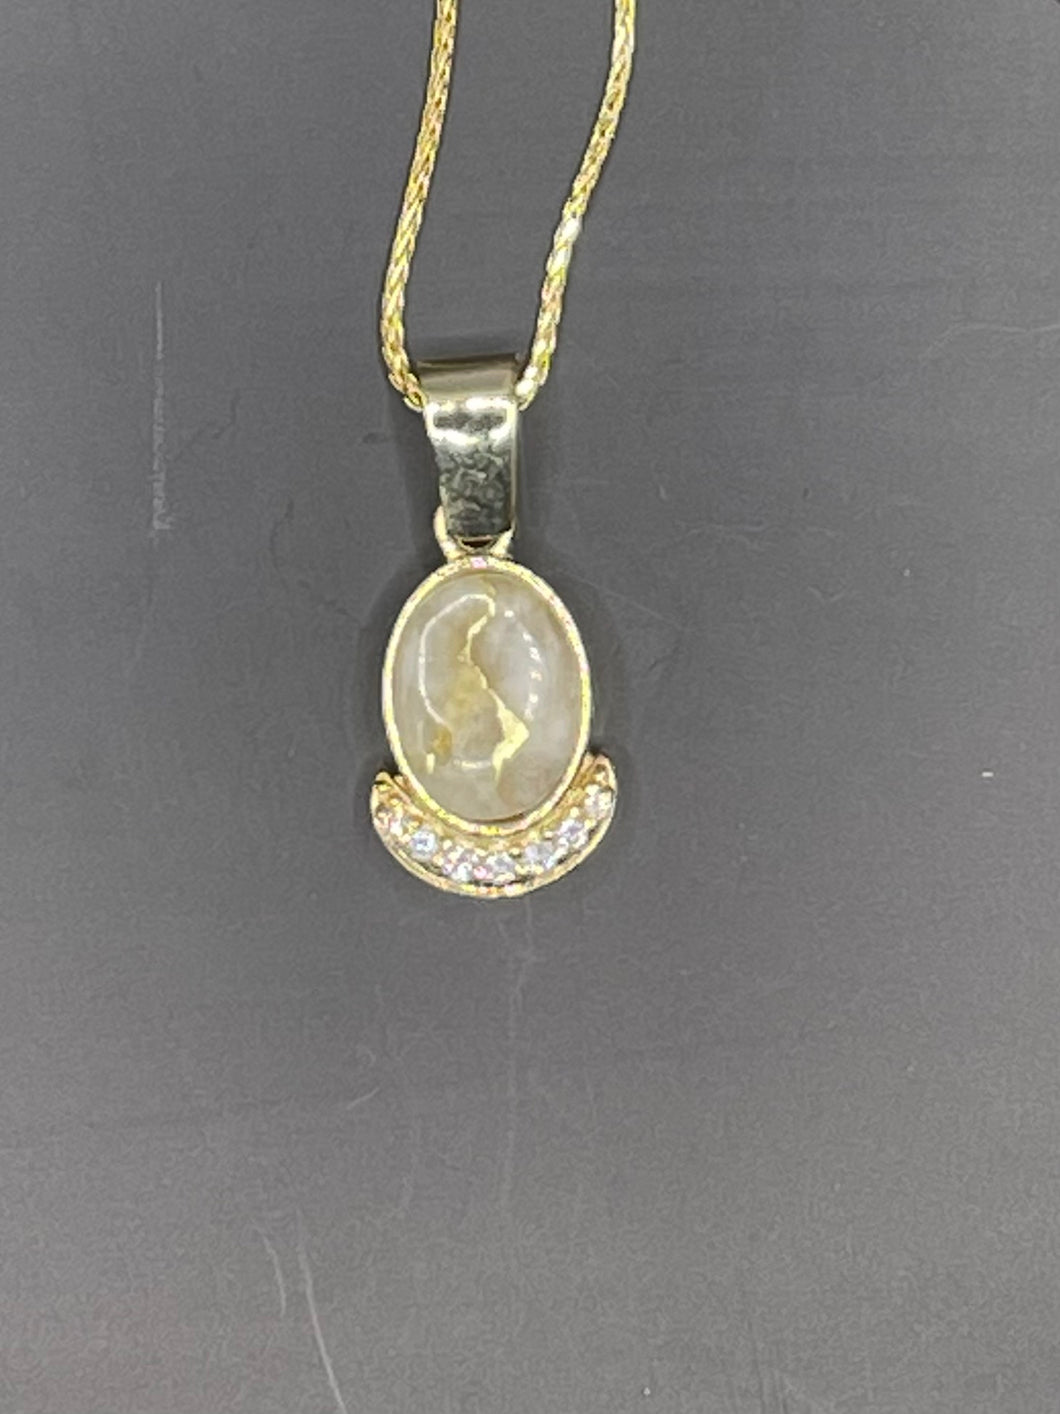 Limited edition, Gold quartz pendant